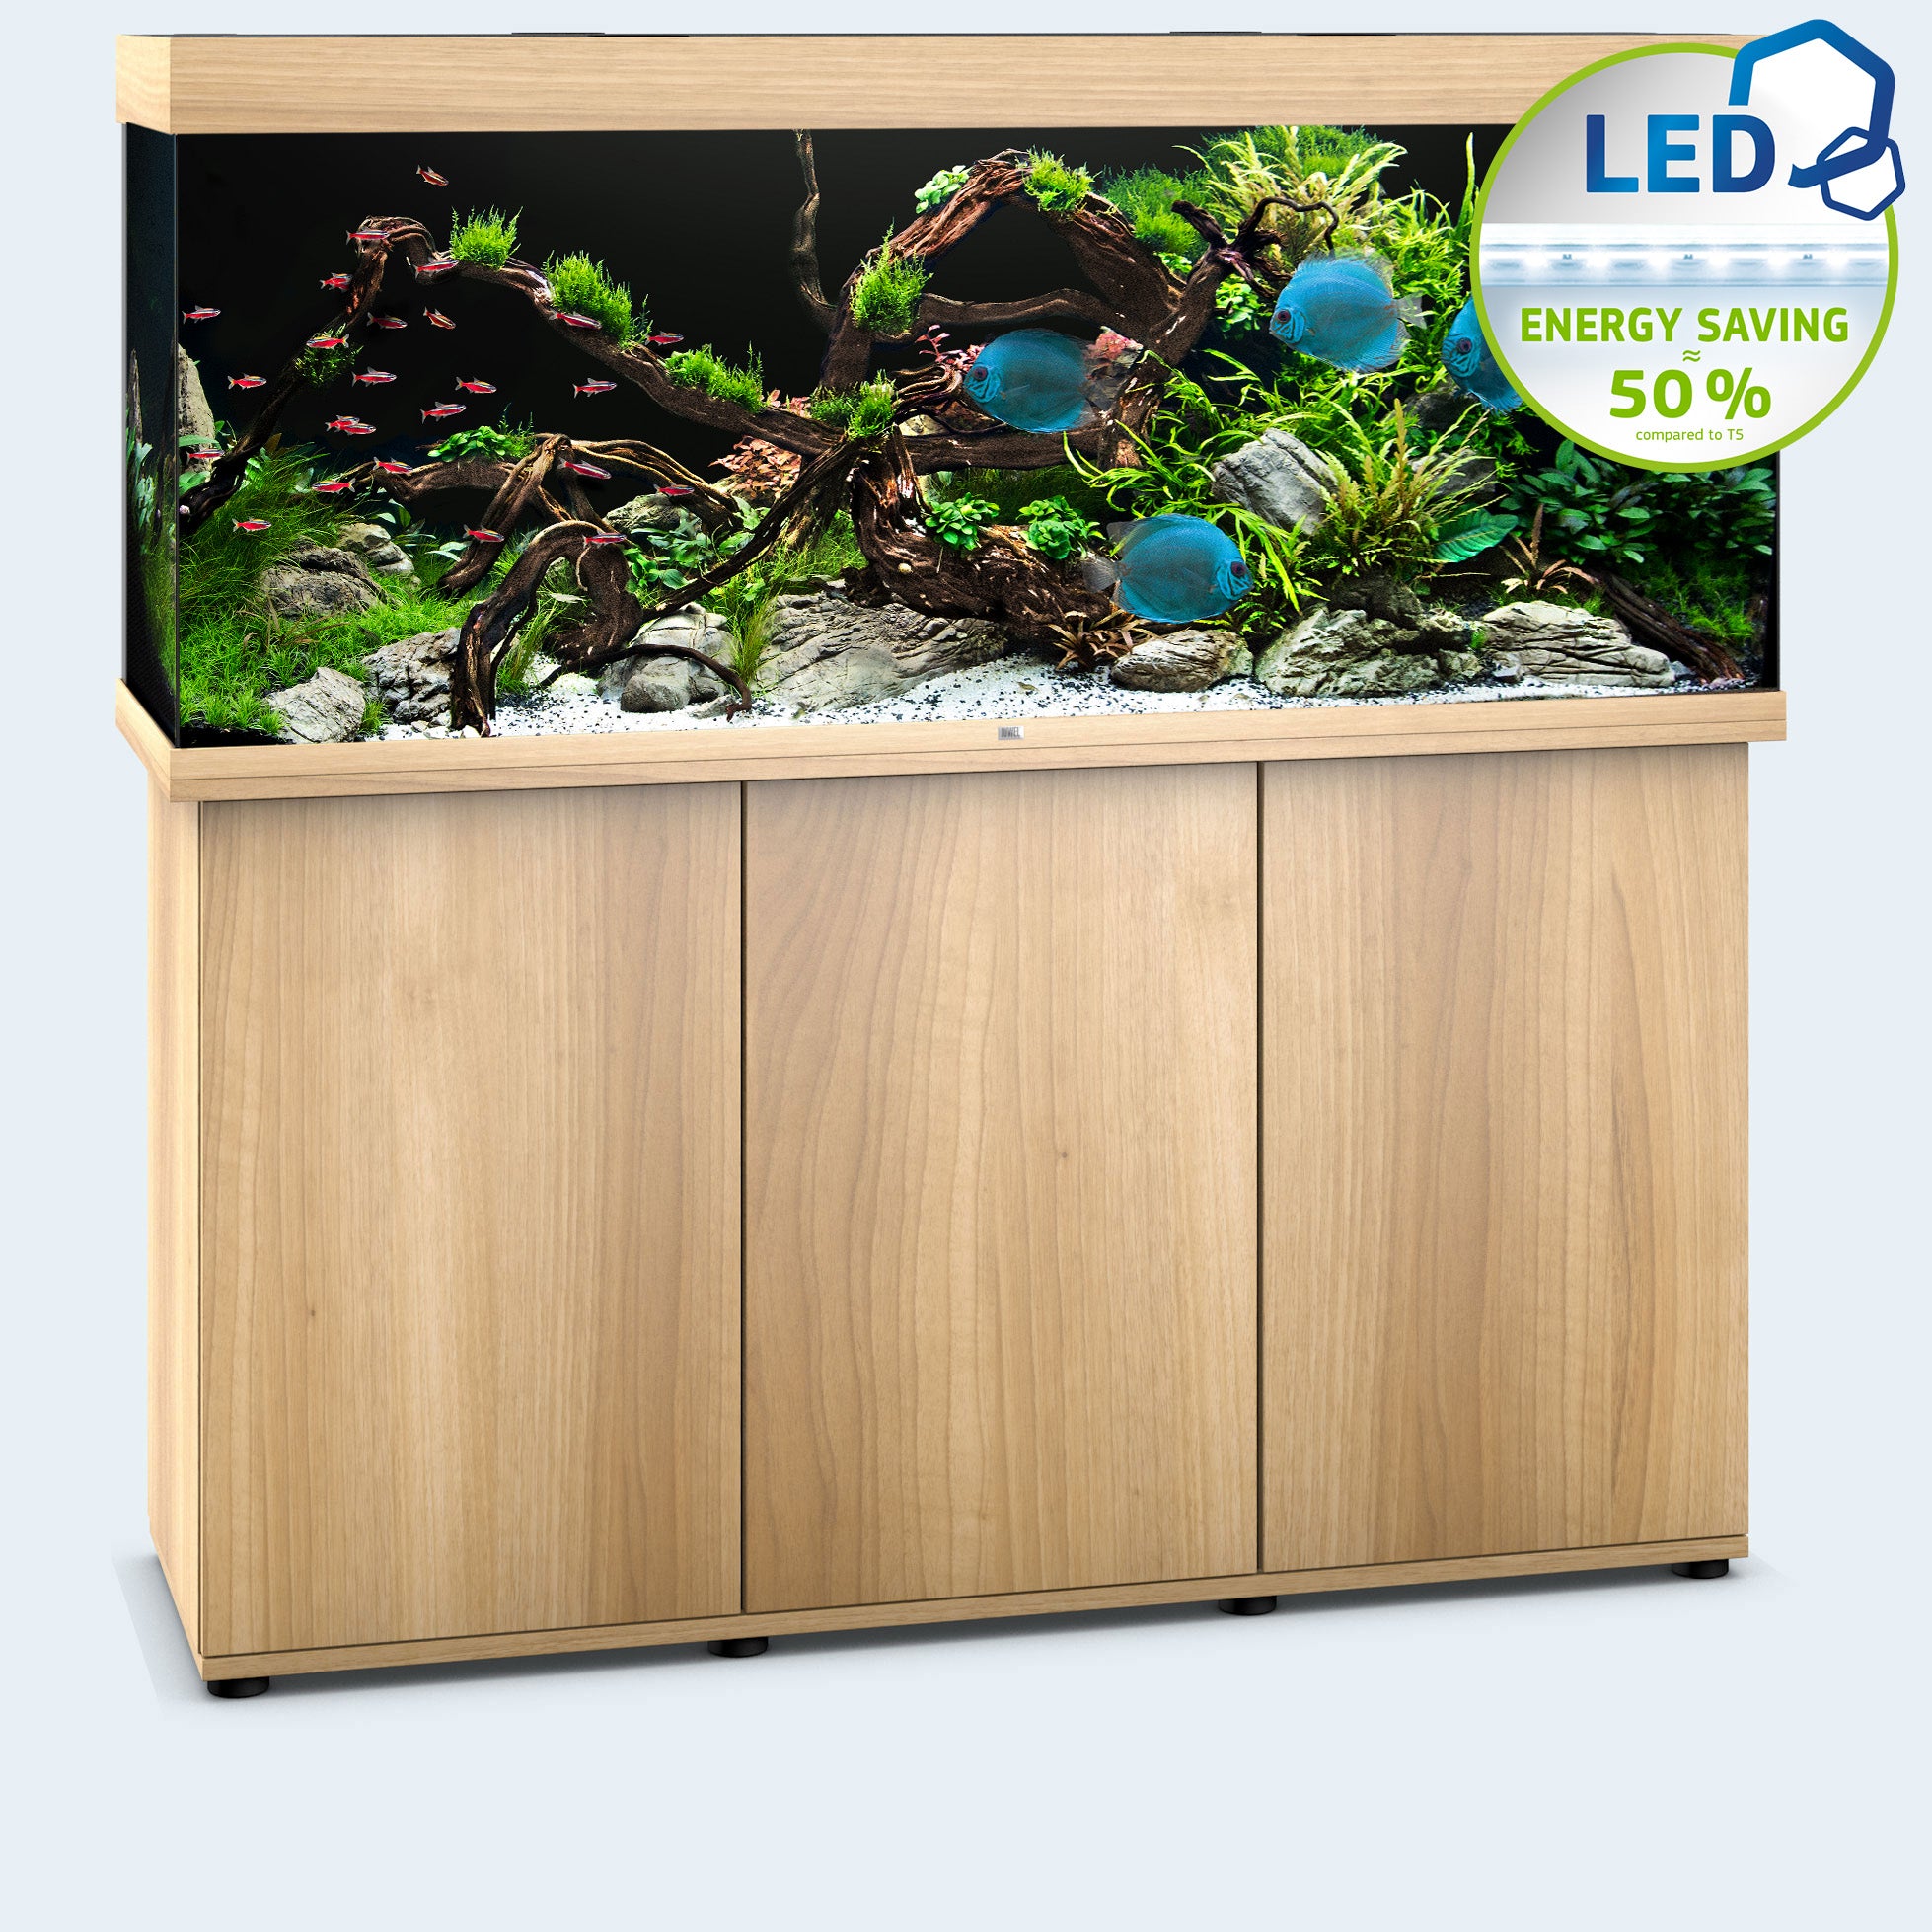 Jewel Rio 450 Aquarium and Cabinet